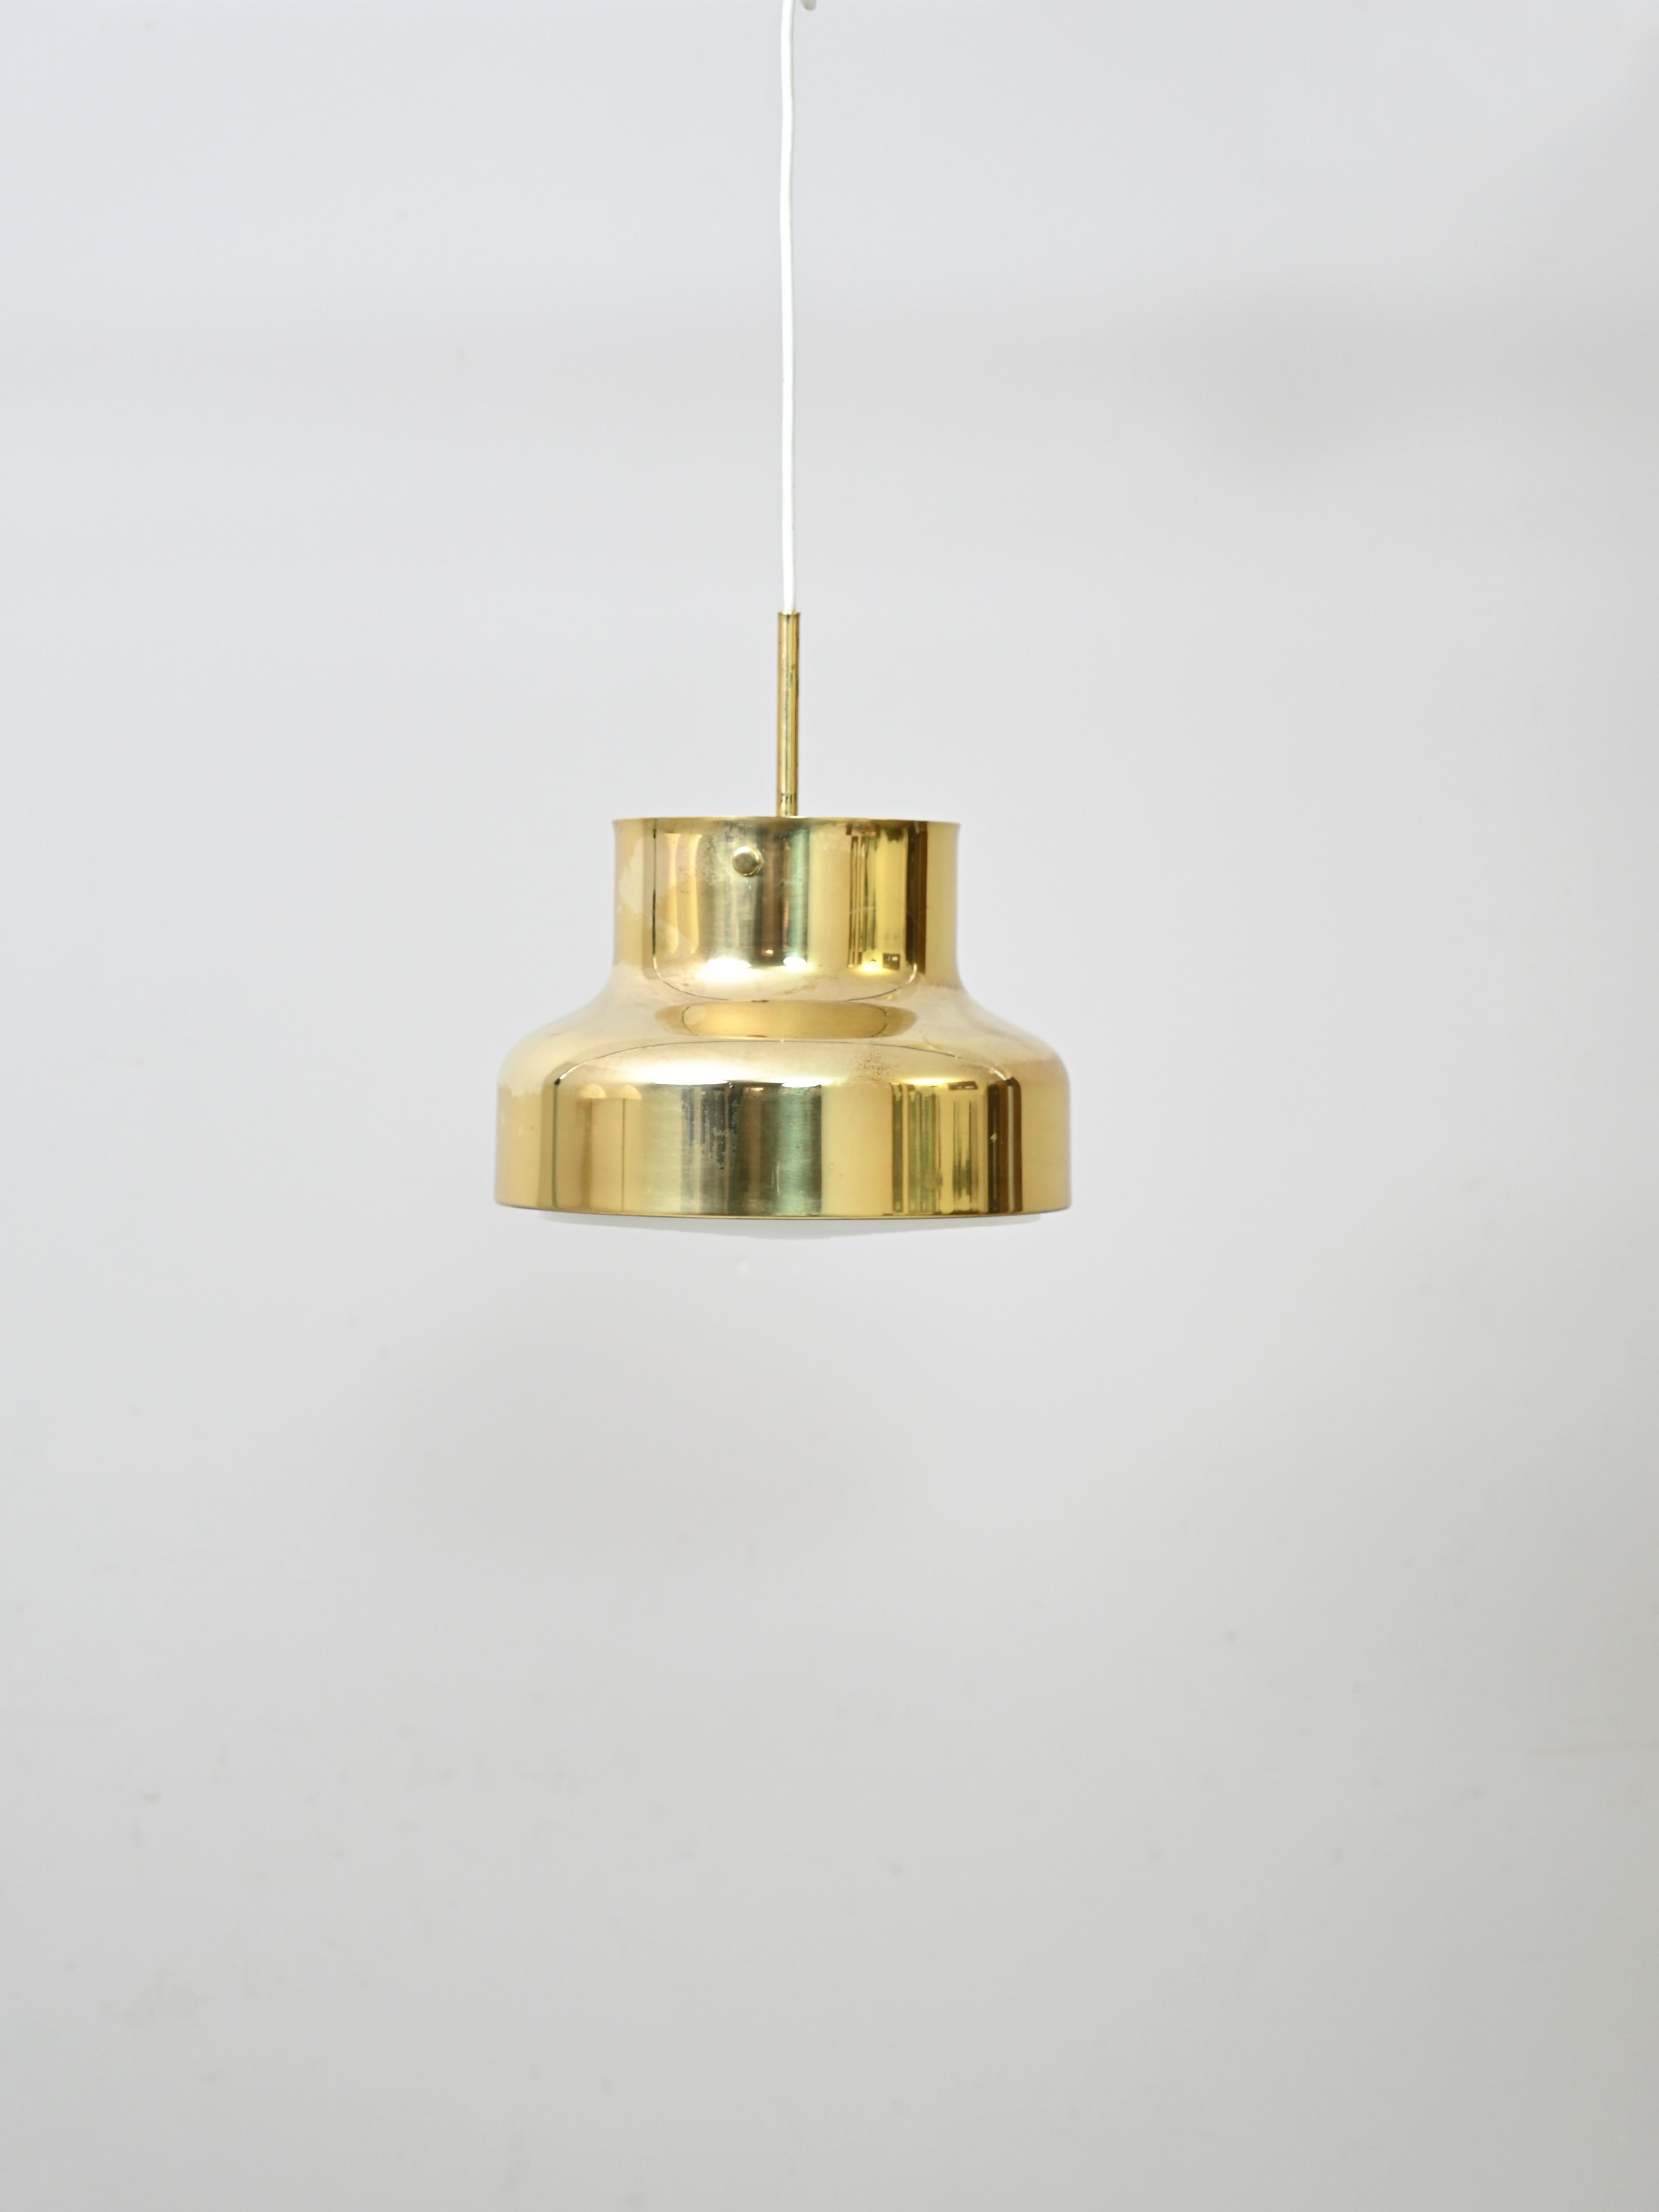 Goldene Hängelampe
Die Bumling-Leuchtenserie wurde von Anders Pehrson für Ateljé Lyktan in Åhus im
Ende der 1960er Jahre.
Dies ist die kleinere Messingversion mit einem Durchmesser von 25 cm.
Das Licht wird gefiltert und gestreut dank des